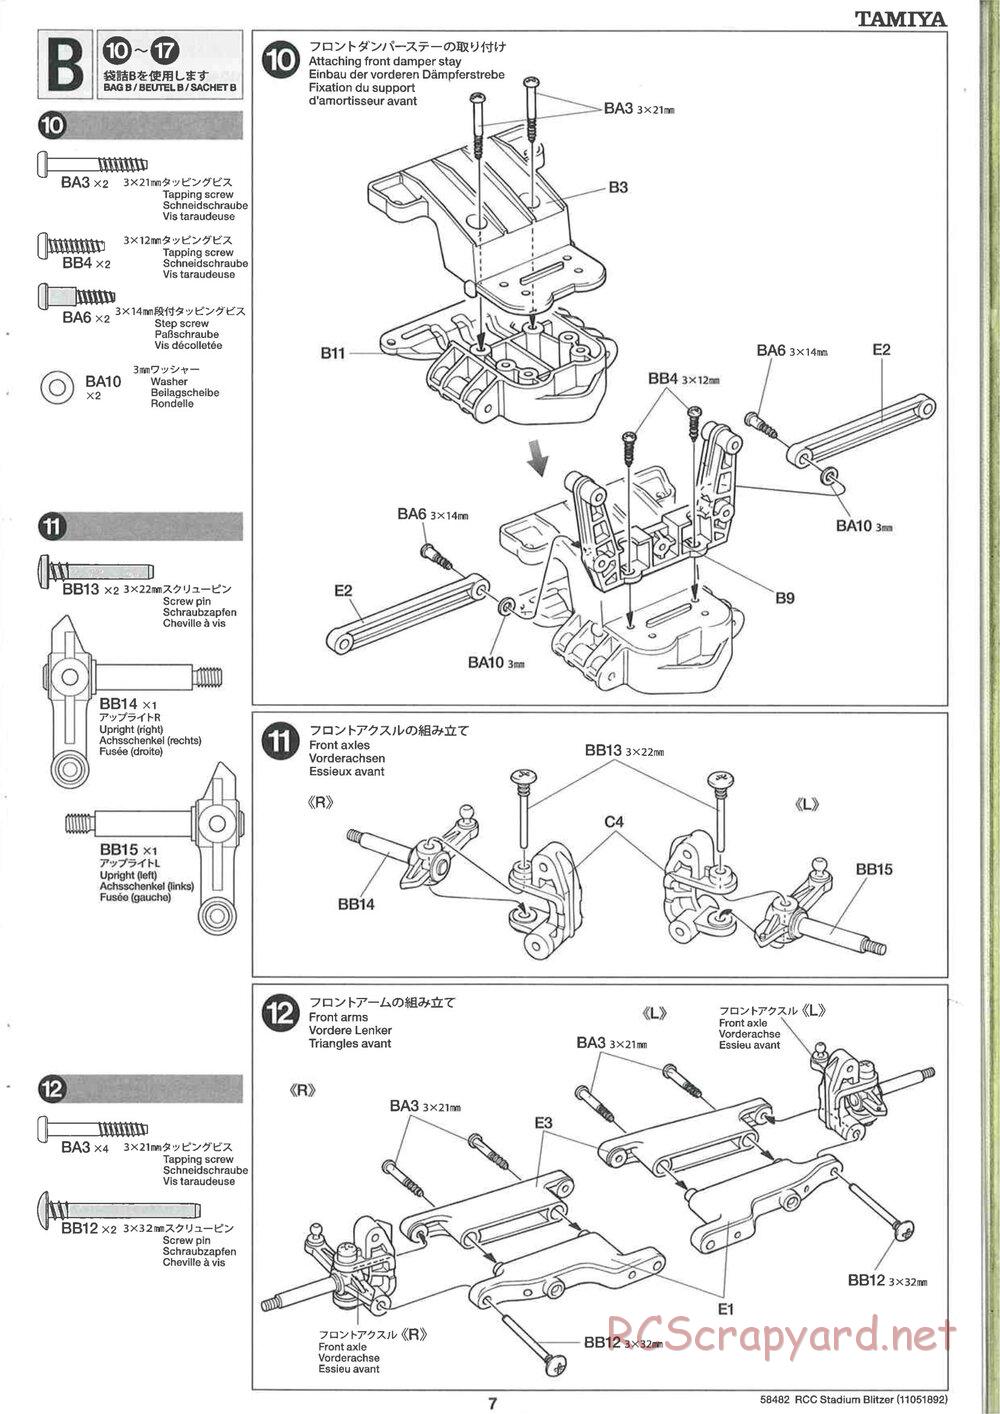 Tamiya - Stadium Blitzer 2010 - FAL Chassis - Manual - Page 7